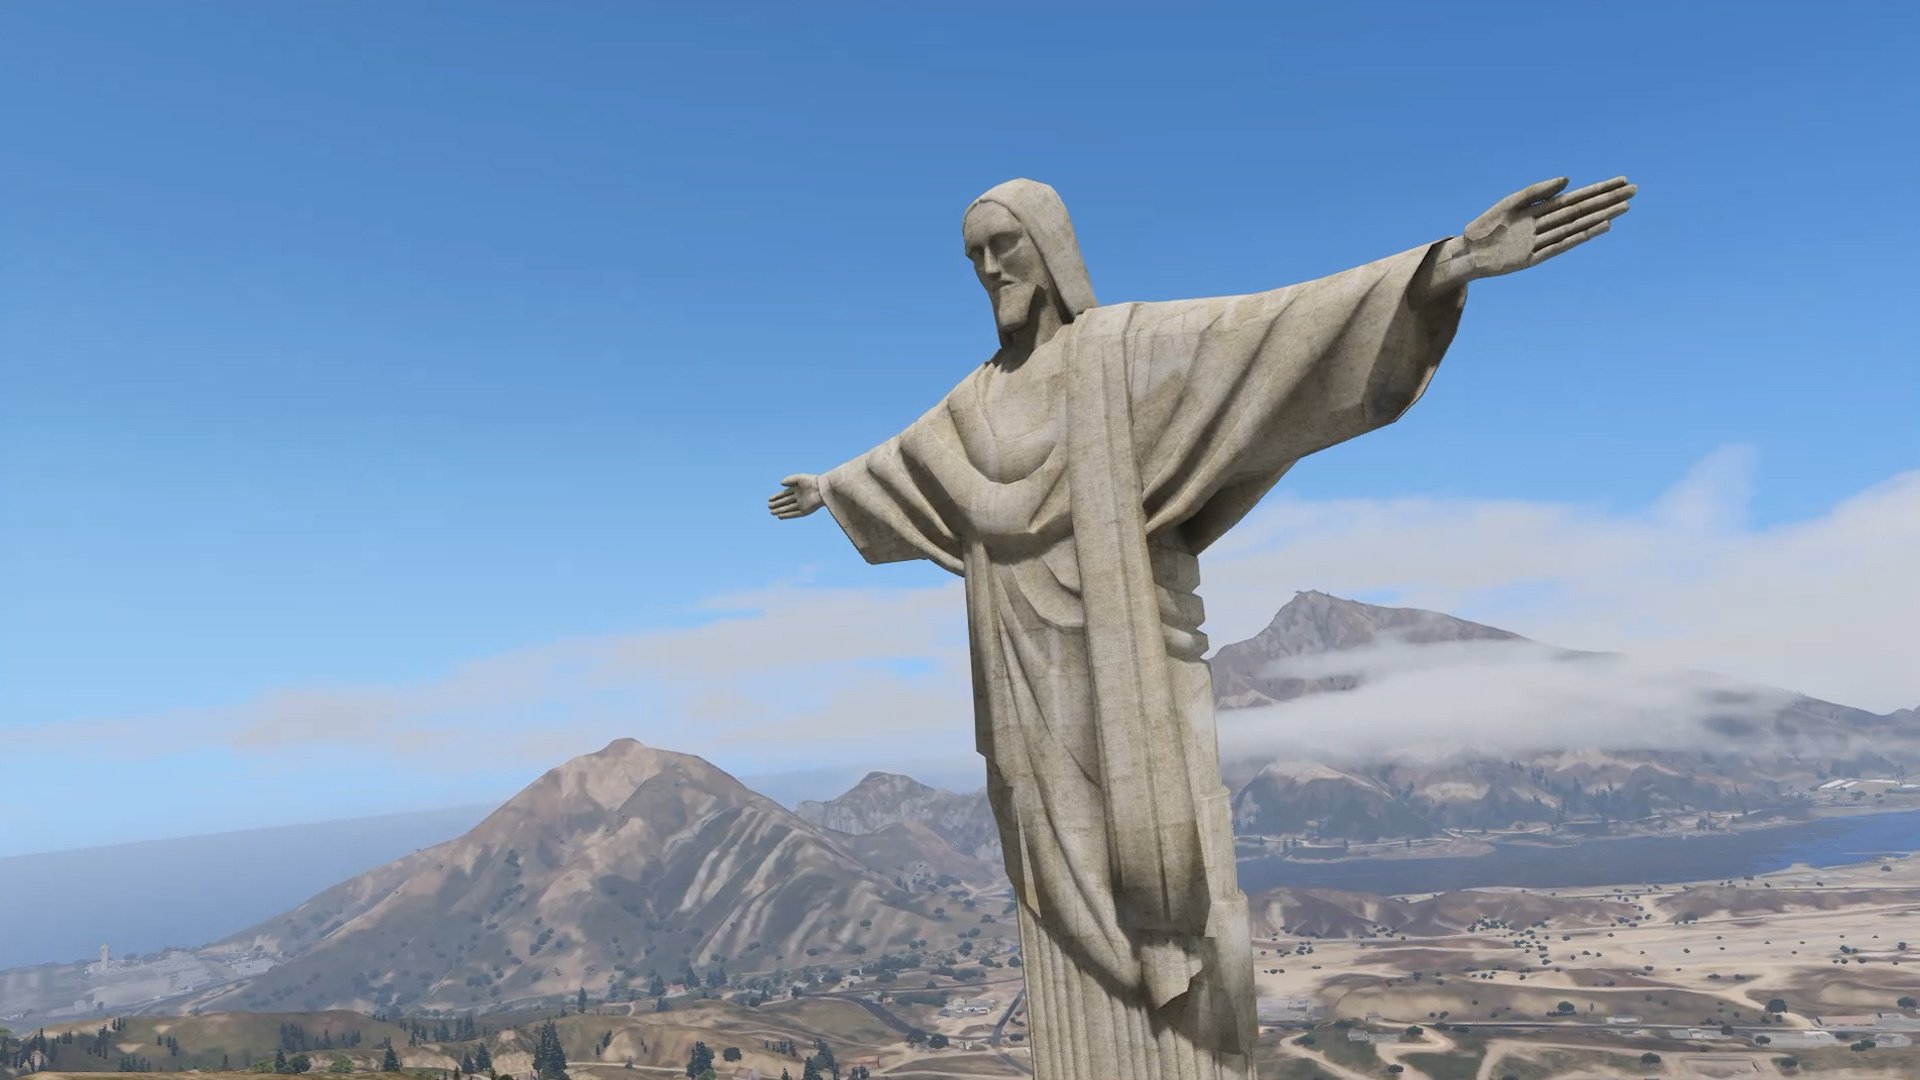 Hz что это. Статуя Христа-Искупителя в Армении. Статуя Иисуса Христа в Армении проект. Царукян статуя Христа. Абовян статуя Иисуса.